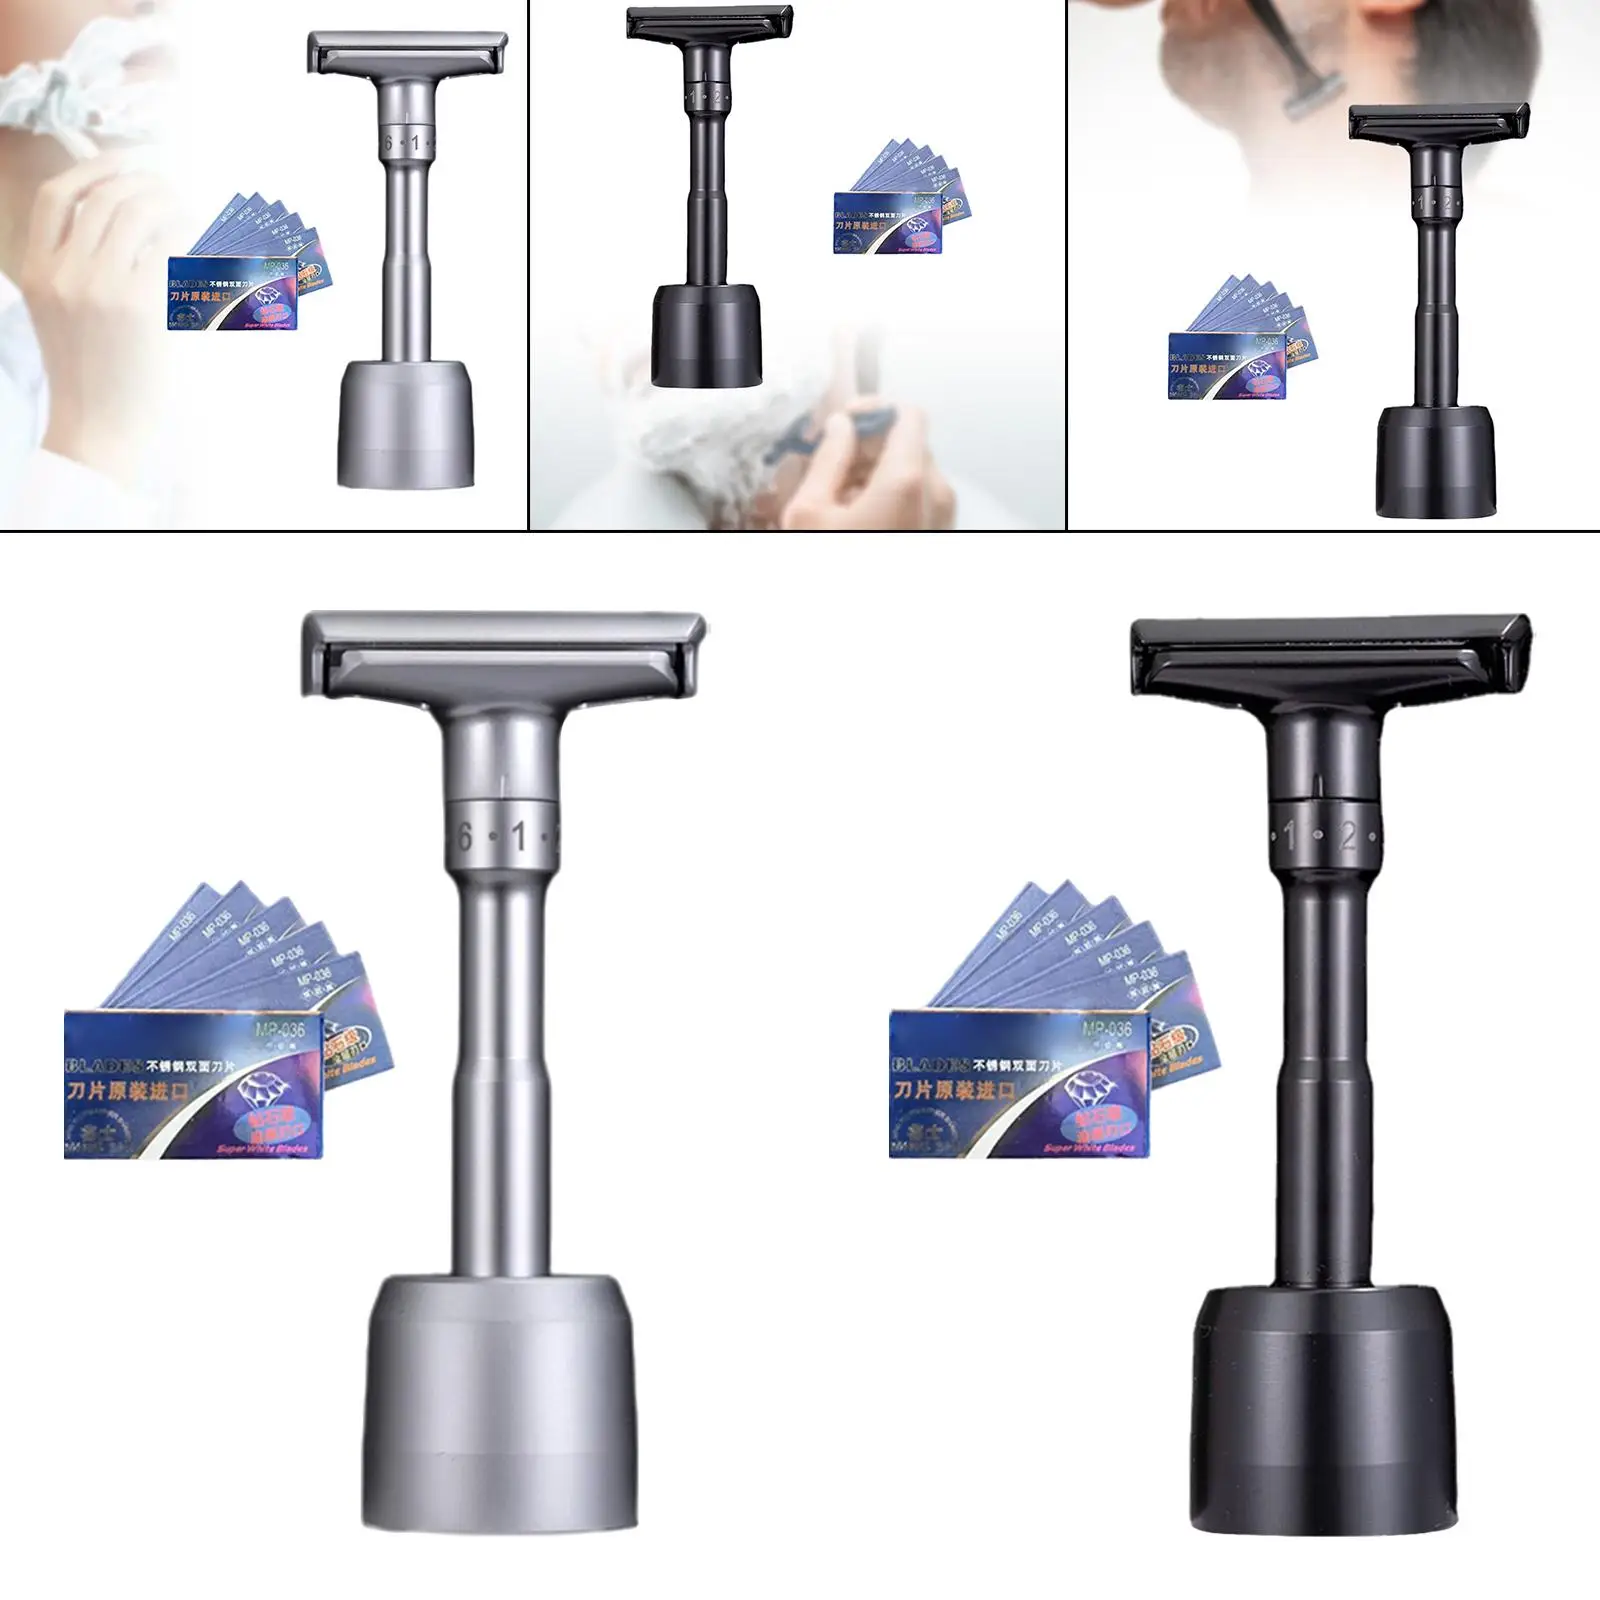 Adjustable Double Edge Safety Razor Wet Shaving Shaver for Barber Shop